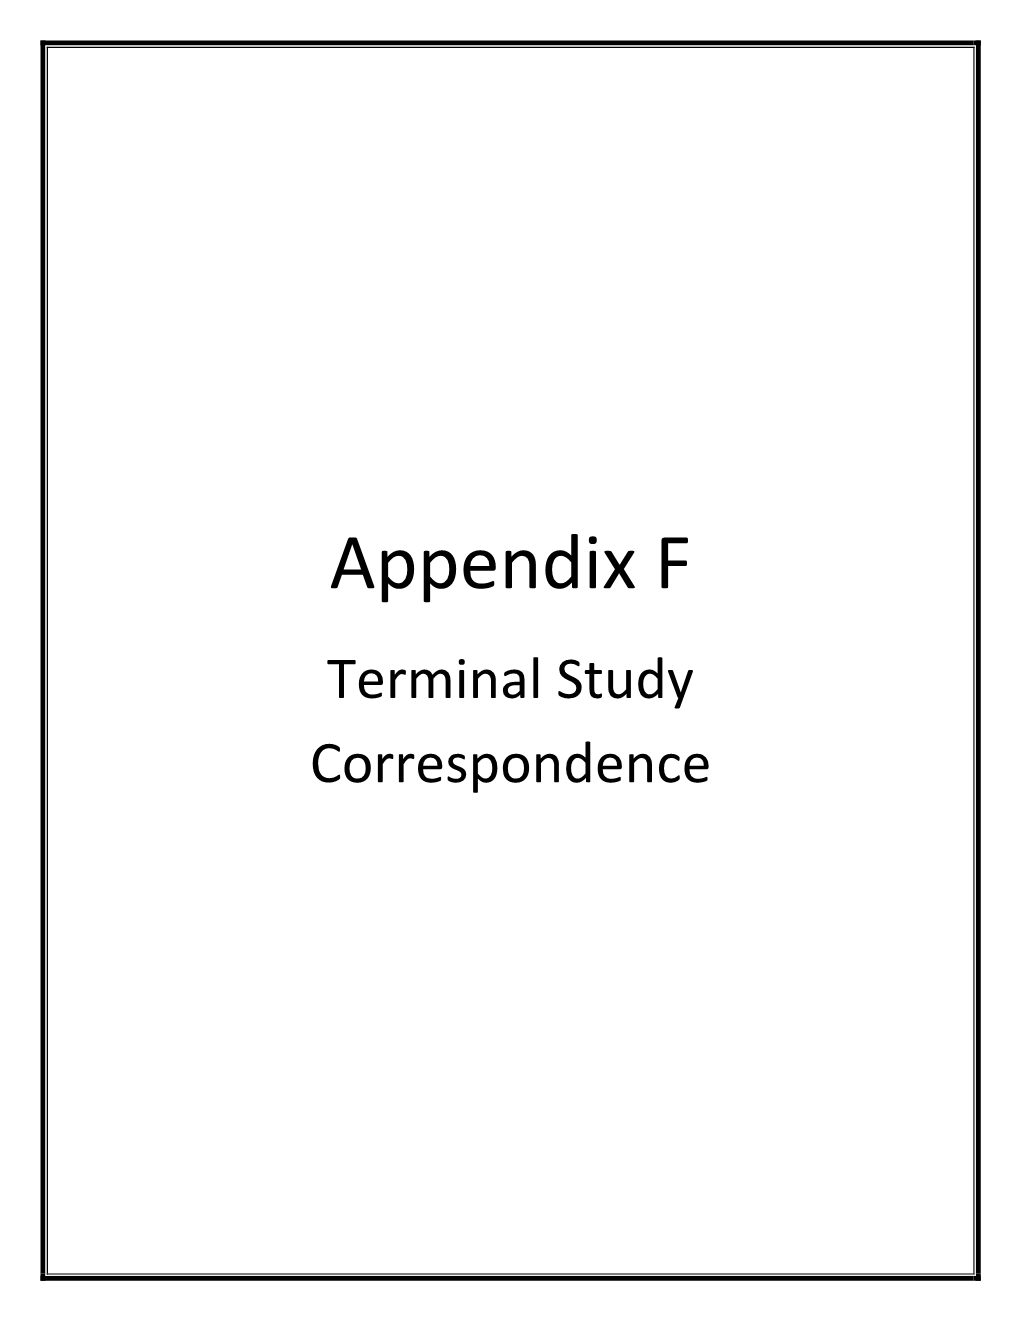 Appendix F (PDF)